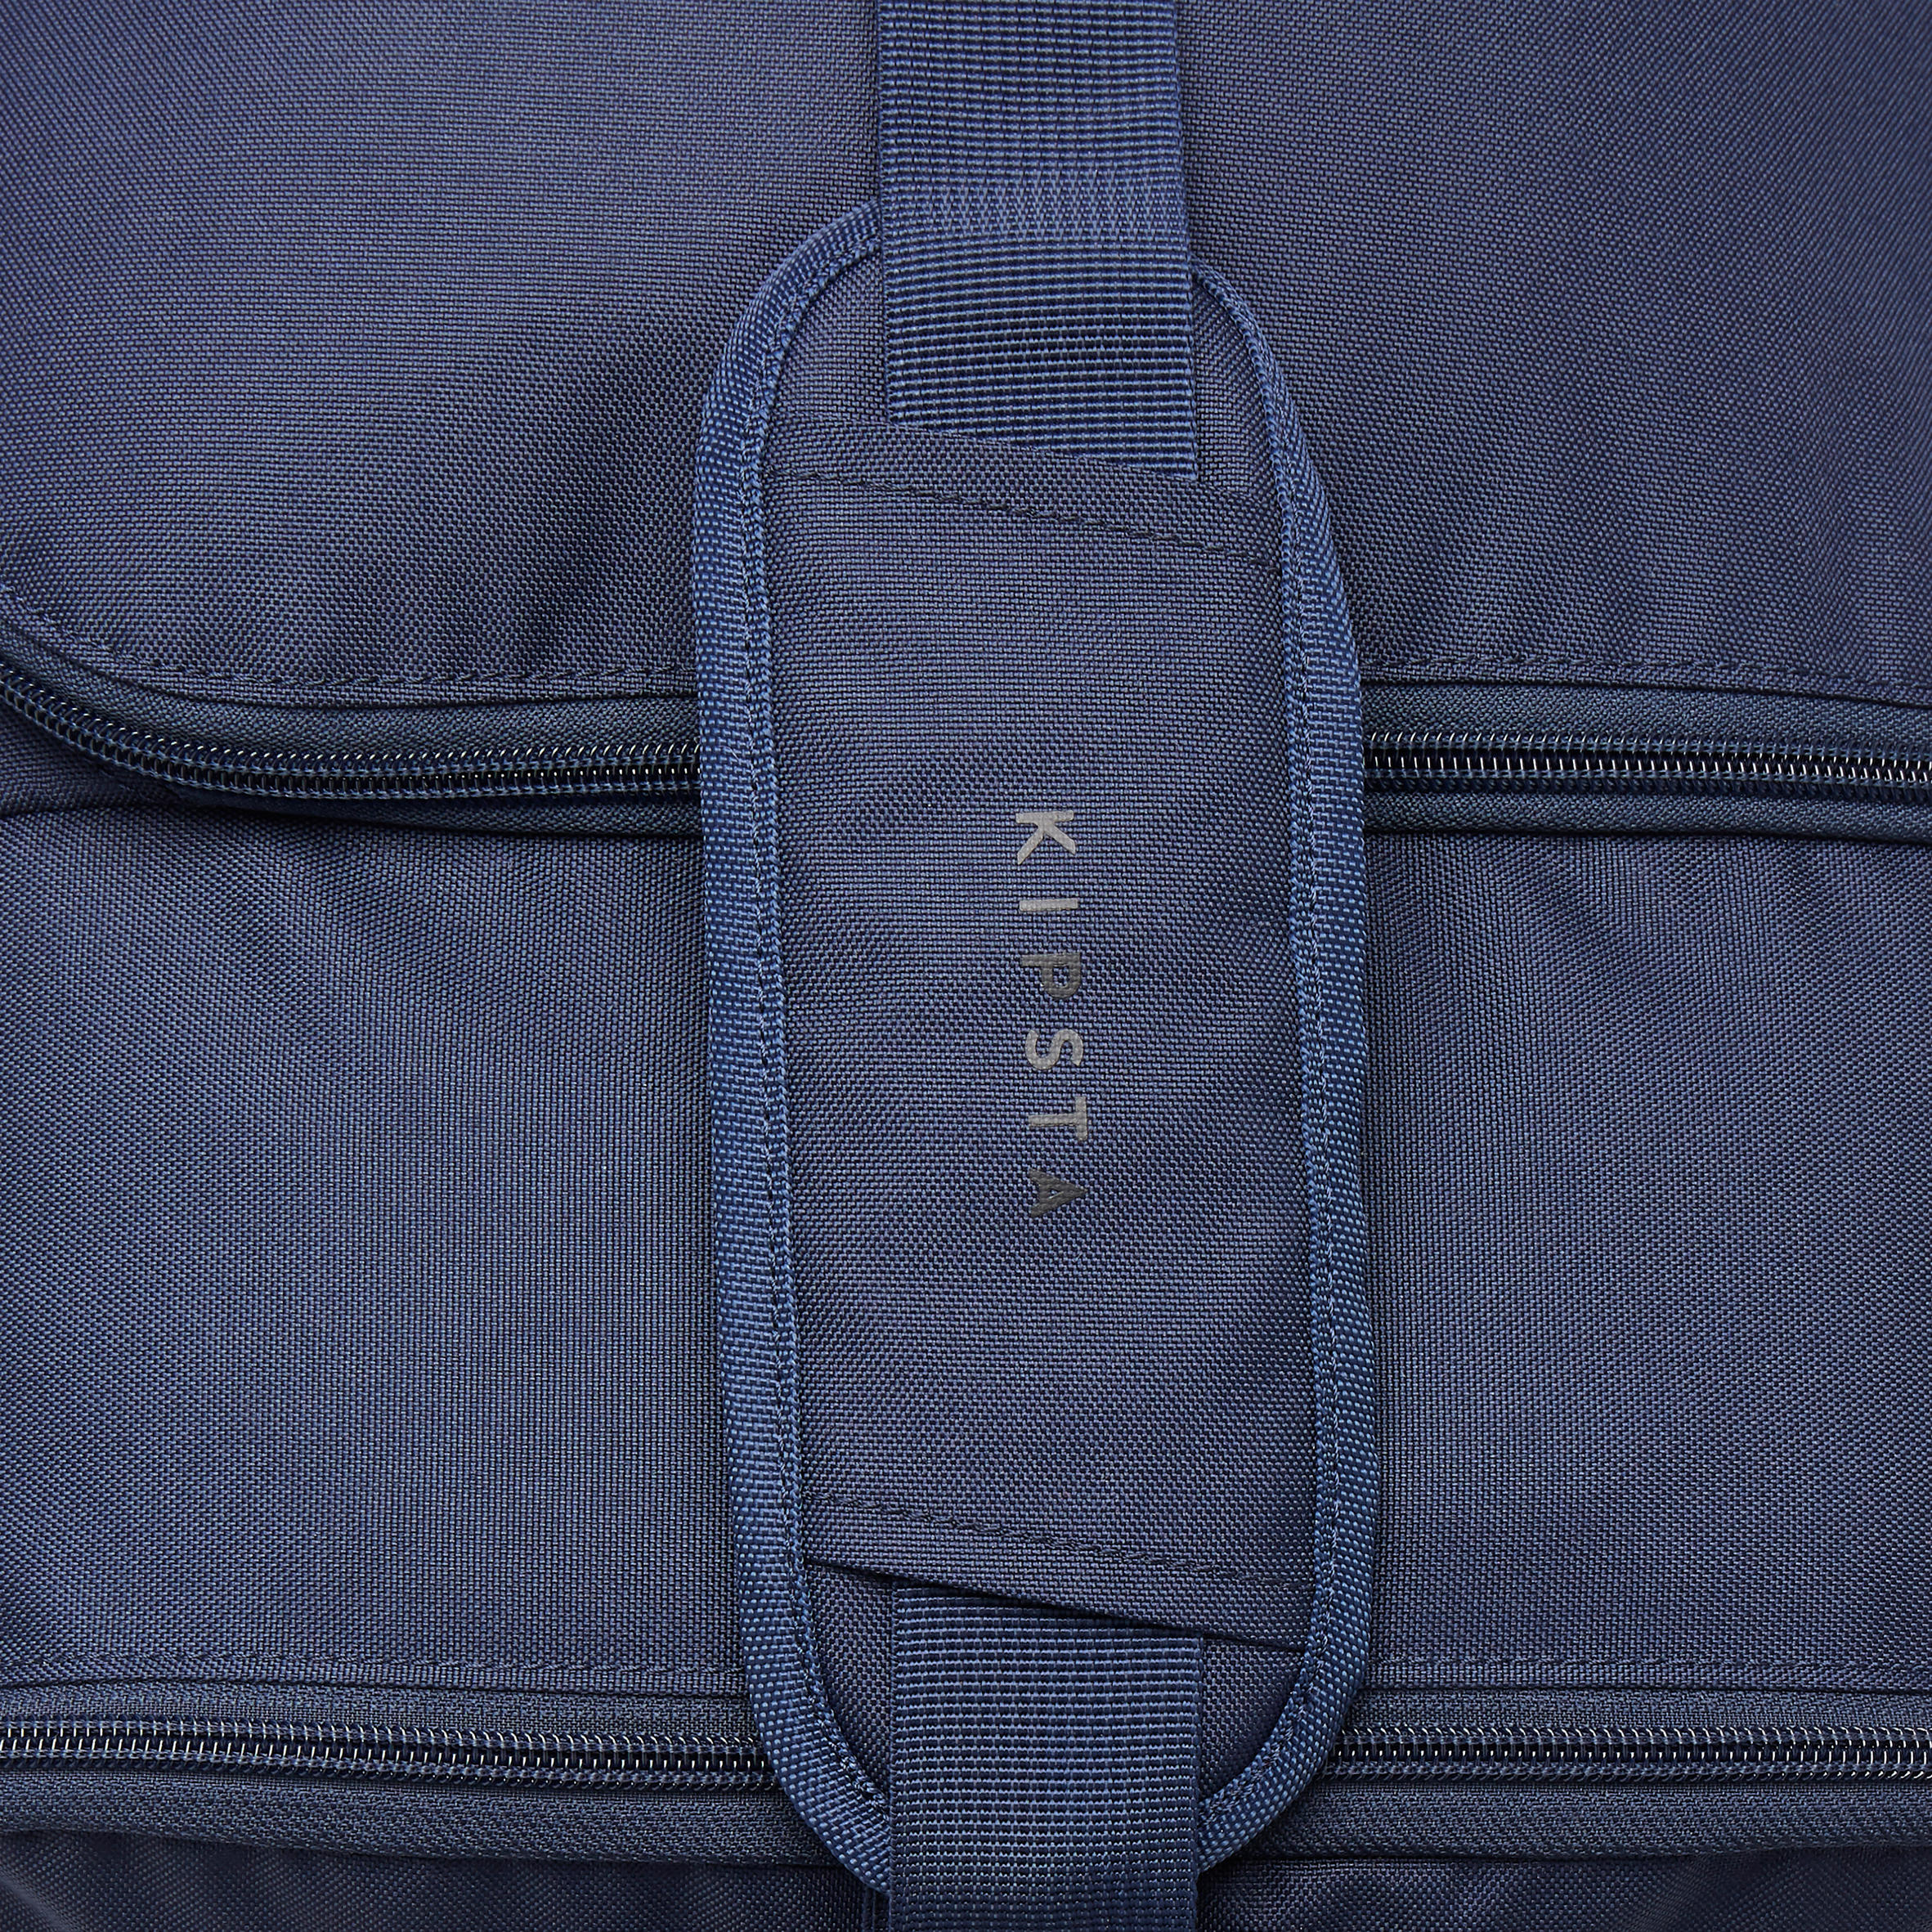 75 L Soccer Bag - Essential - KIPSTA